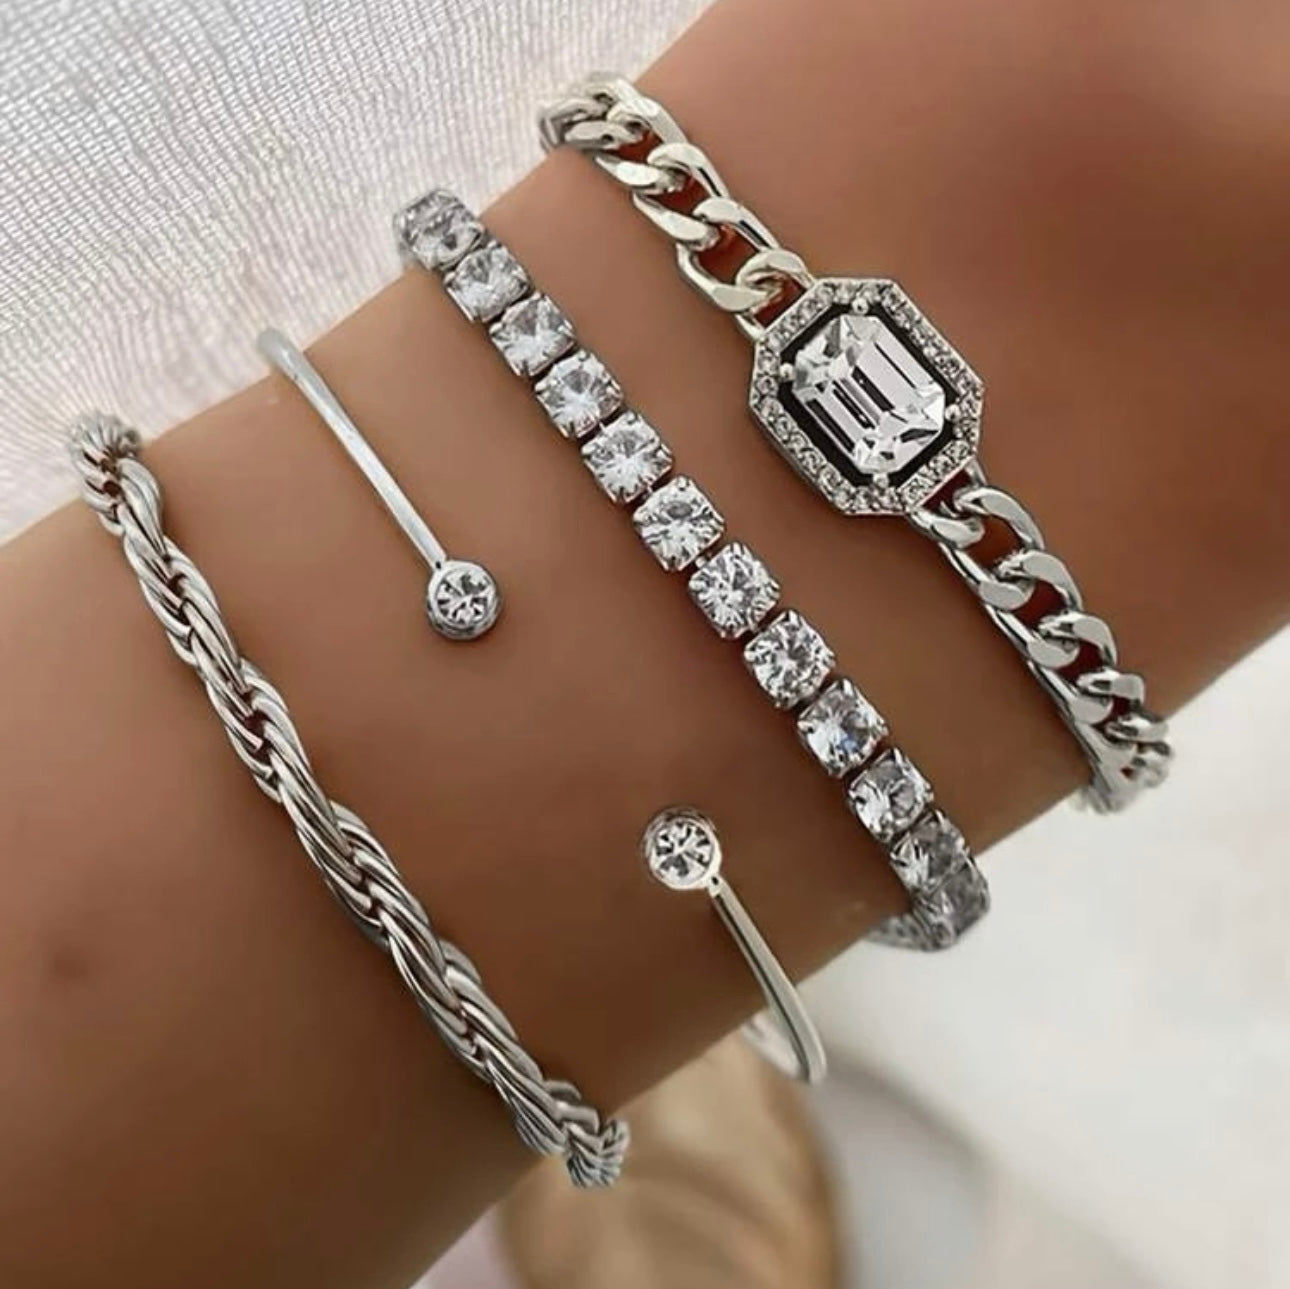 Silver Stack of 4 bracelets